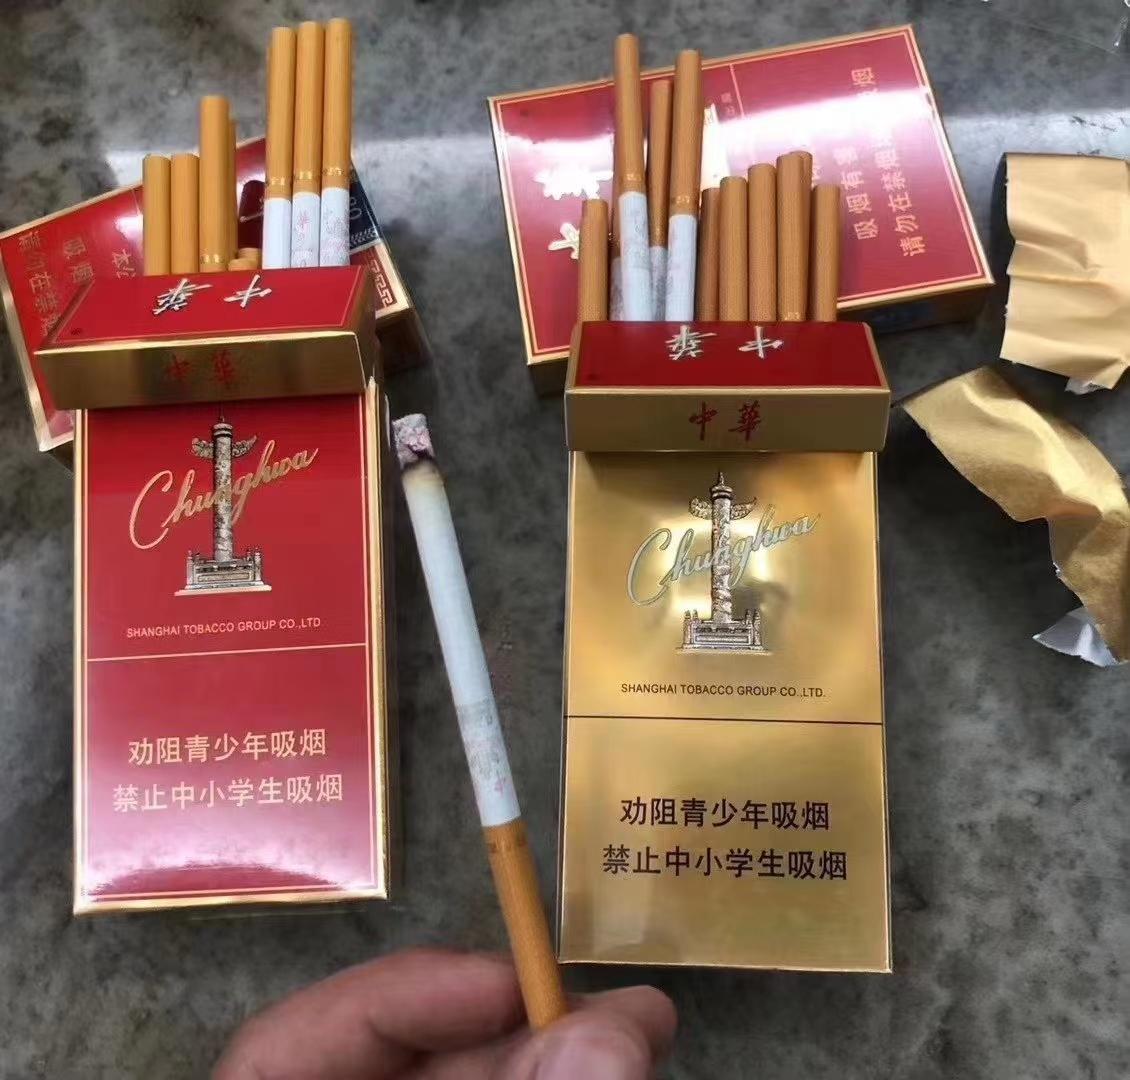 中华金细支香烟在哪里能买到细支中华金细支中华香烟中华普细支和中华